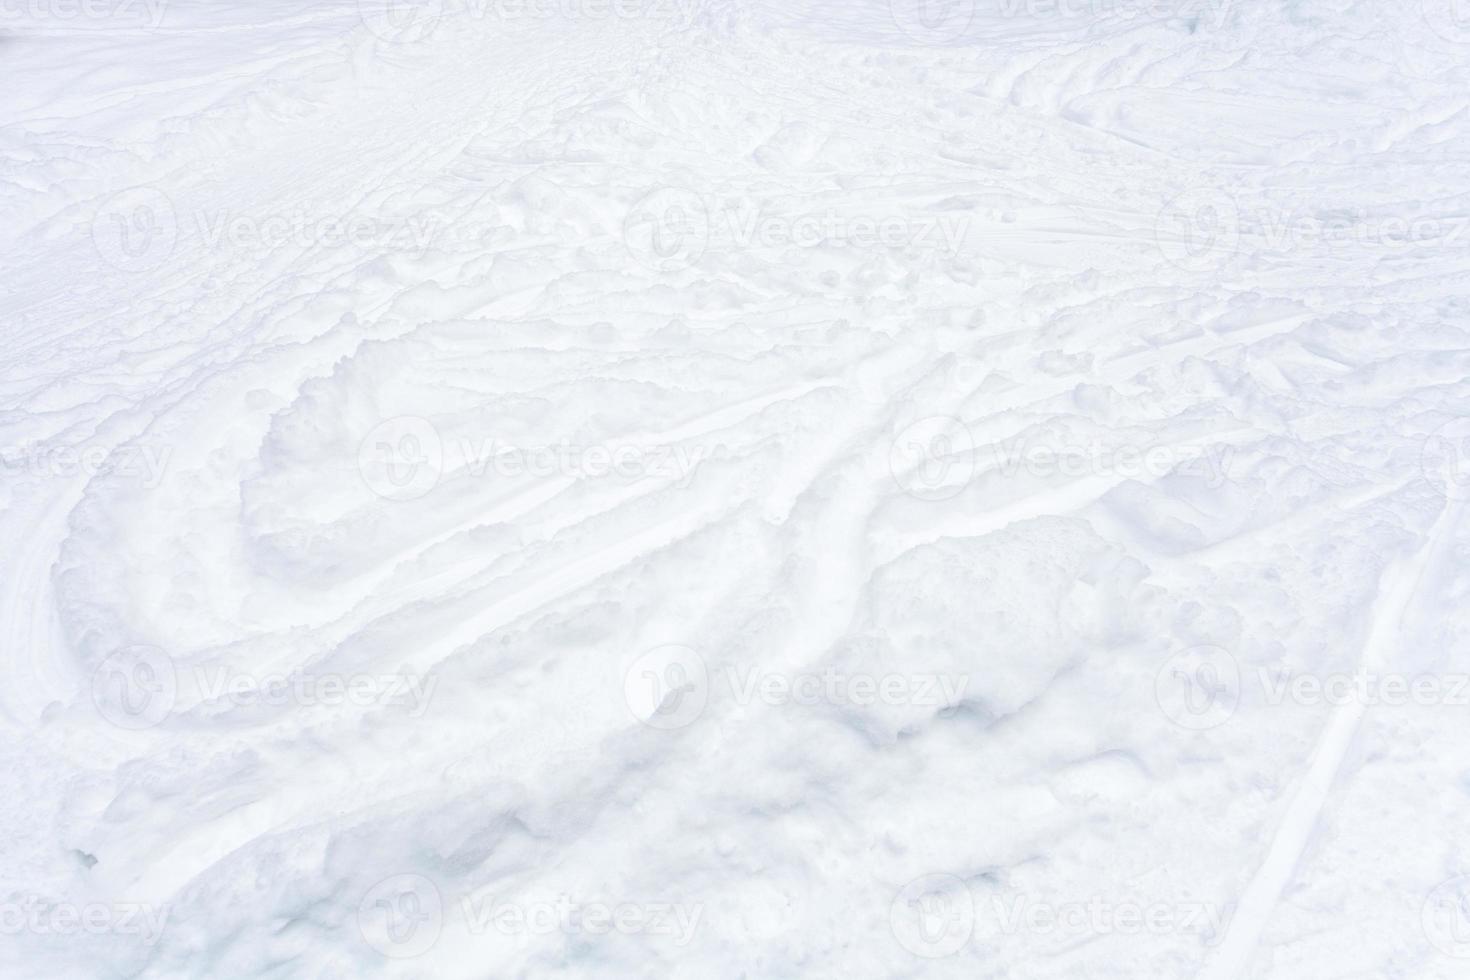 Schneefeld mit Skipisten und Wegen im Schnee foto